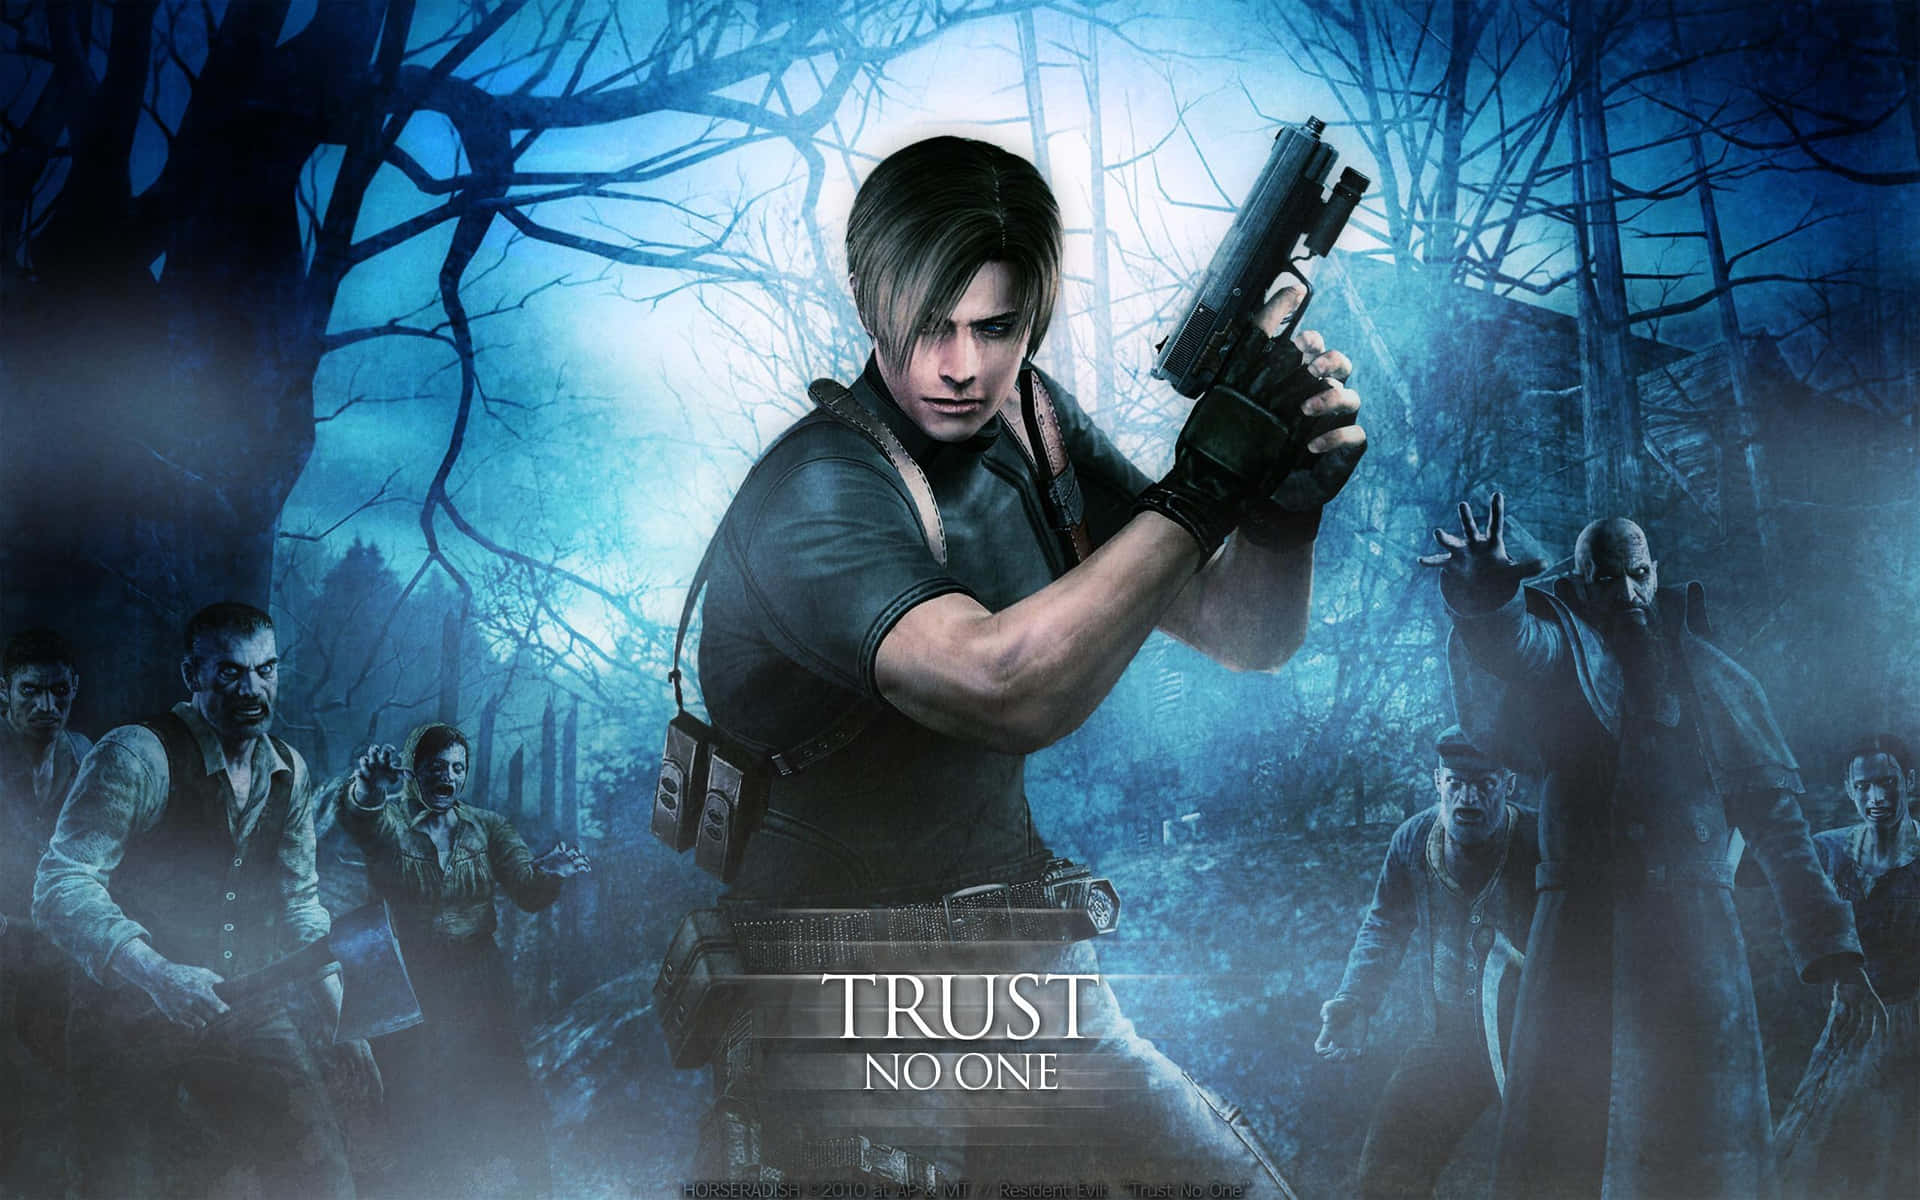 Ilcast Drammatico Di Resident Evil In Azione